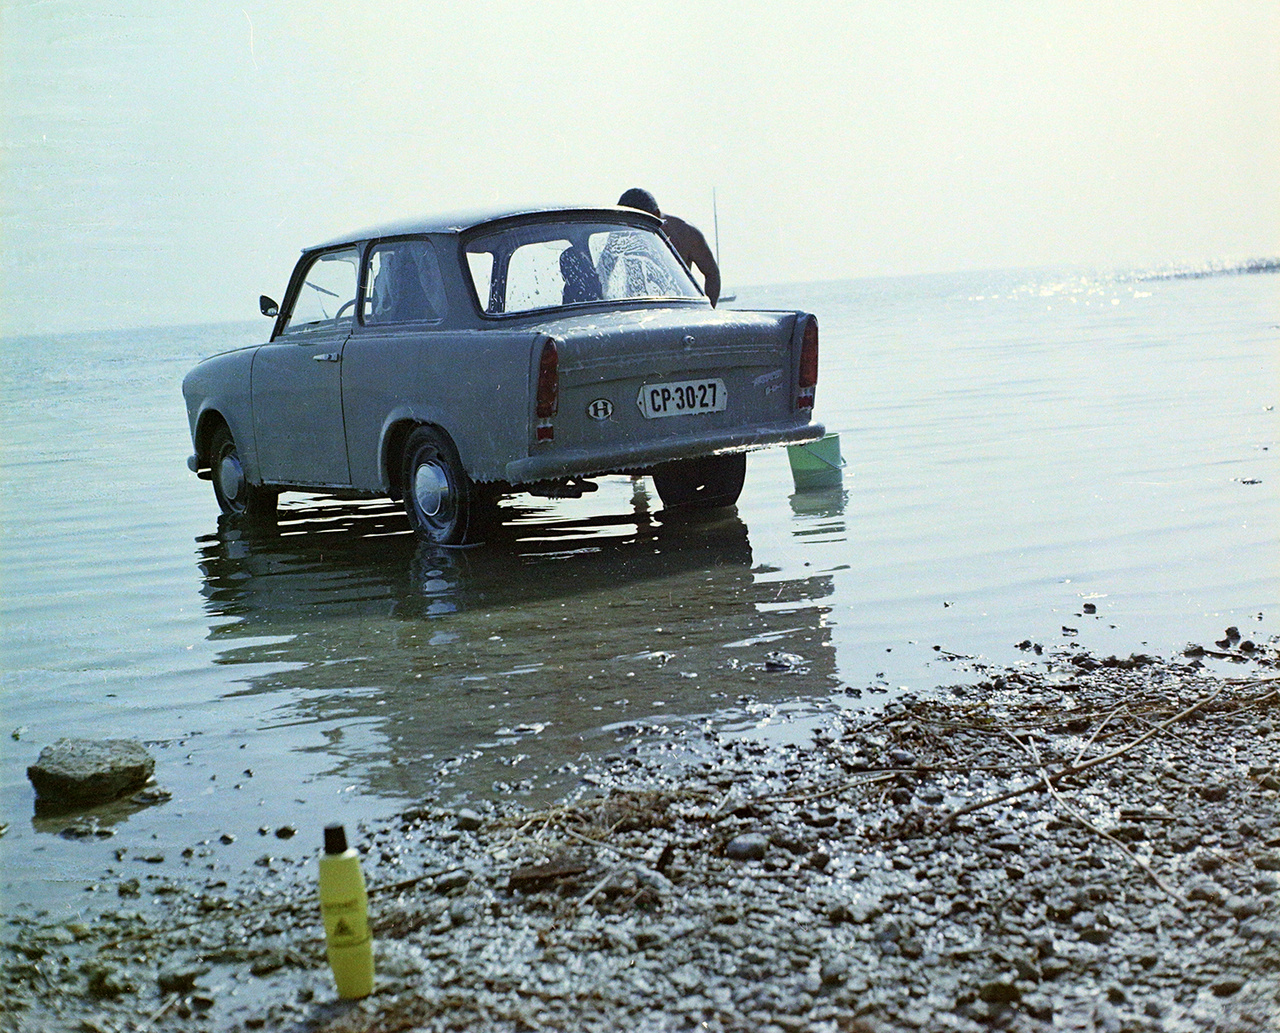 KÉP: A Balatonban fürdetik a Trabant 601 típusú személygépkocsit, 1971.Ekkoriban főként Trabantra, Wartburgra, Moszkvicsra volt kilátásuk az autóra vágyóknak. Nagyon népszerűnek számított az 1963-tól gyártott Trabant 601, amelyből az évtizedek során igazi kultautó, afféle szimbólum lett, ma is imádott veterán. Fém vázszerkezetének borítását duroplast műanyagból gyártották, kéthengeres motorja kétütemű volt. A hatvanas évek második felében egy 601 Limousine 46 ezer forintba került, míg az Universalért 50 ezret kértek el. A kétezres években aztán a kétütemű autók kezdtek egyre inkább nem kívánatossá válni, többször belengették, hogy a környezetvédelmi felülvizsgálat feltételeit alaposan megszigorítják számukra. Míg a haladékot újra és újra megtoldották, közben a kétütemű kocsik szinte teljesen kikoptak a napi forgalomból, néhány kivétellel főleg hobbiautóként tartják őket.A technikai fejlődés mellett a környezetvédelmi előírások fokozatos szigorítása a másik oka az egyre tisztább üzemű autók terjedésének. Ma már az autógyárak a vásárlói igényeket figyelembe véve fontosnak tartják, hogy forgalomba hozzanak a hagyományos benzinesnél és dízelnél tisztább üzemű modelleket is. Az új és alternatív technológiák használata egyszerre van jelen gyártói és fogyasztói oldalon is. Az elmúlt évtizedek során különböző éghajlatváltozási jelenségek miatt az emberiség változtatni kényszerült a hétköznapi dolgokhoz való hozzáállásán. Pár éve még ritkaság volt a zöld rendszámú autó az utakon, ma már ez teljesen megszokott. A kipufogógáz és a kibocsájtott füst ezzel mérséklődött, de az ember nem csak a volán mögött ülve, a gázpedált nyomva tud füstöt kibocsátani, hanem például a dohányzás során is. Autóeladásnál előny a nemdohányzó tulajdonos, hisz akkor azt feltételezheti a vevő, hogy a dohányzás során keletkező füst nem került az autókárpit szöveteibe, hiszen a füst nemcsak büdös, hanem az egészségre káros is.Az Amerikai Egyesült Államok Élelmiszerengedélyeztetési Hivatalának (FDA) kutatása szerint a cigaretta égése során közel hétezer vegyület szabadul fel, és ebből 93-ról már bizonyított, hogy káros vagy potenciálisan káros az egészségre. Sokan még manapság is úgy vélik, hogy elsősorban a nikotin felelős a dohányzáshoz kapcsolódó megbetegedésekért, amely valóban függőséget okozó anyag, és többek között fejfájást, szédülést okozhat. Azonban nem a nikotin, hanem az égés és az égés során keletkező füst a dohányzással kapcsolatos megbetegedések elsődleges kiváltó oka. Az égés ugyanis nemcsak a belsőégésű motoroknál, hanem a dohányzásnál is ártalmas anyagok felszabadításával jár.  A legjobb tehát az, ha egyáltalán nem szokunk rá a dohányzásra, vagy ha ez megtörtént, akkor igyekszünk mihamarabb abbahagyni. Ezzel nem csak önmagunk, hanem környezetünk egészségéért is teszünk, ráadásul a leszokással párhuzamosan csökken a dohányzáshoz köthető betegségek kockázata is. Aki viszont valamilyen ok miatt nem szokik le, azok számára ma már léteznek füstmentes technológiák, amelyek a cigarettánál kevésbé káros alternatívát nyújthatnak.